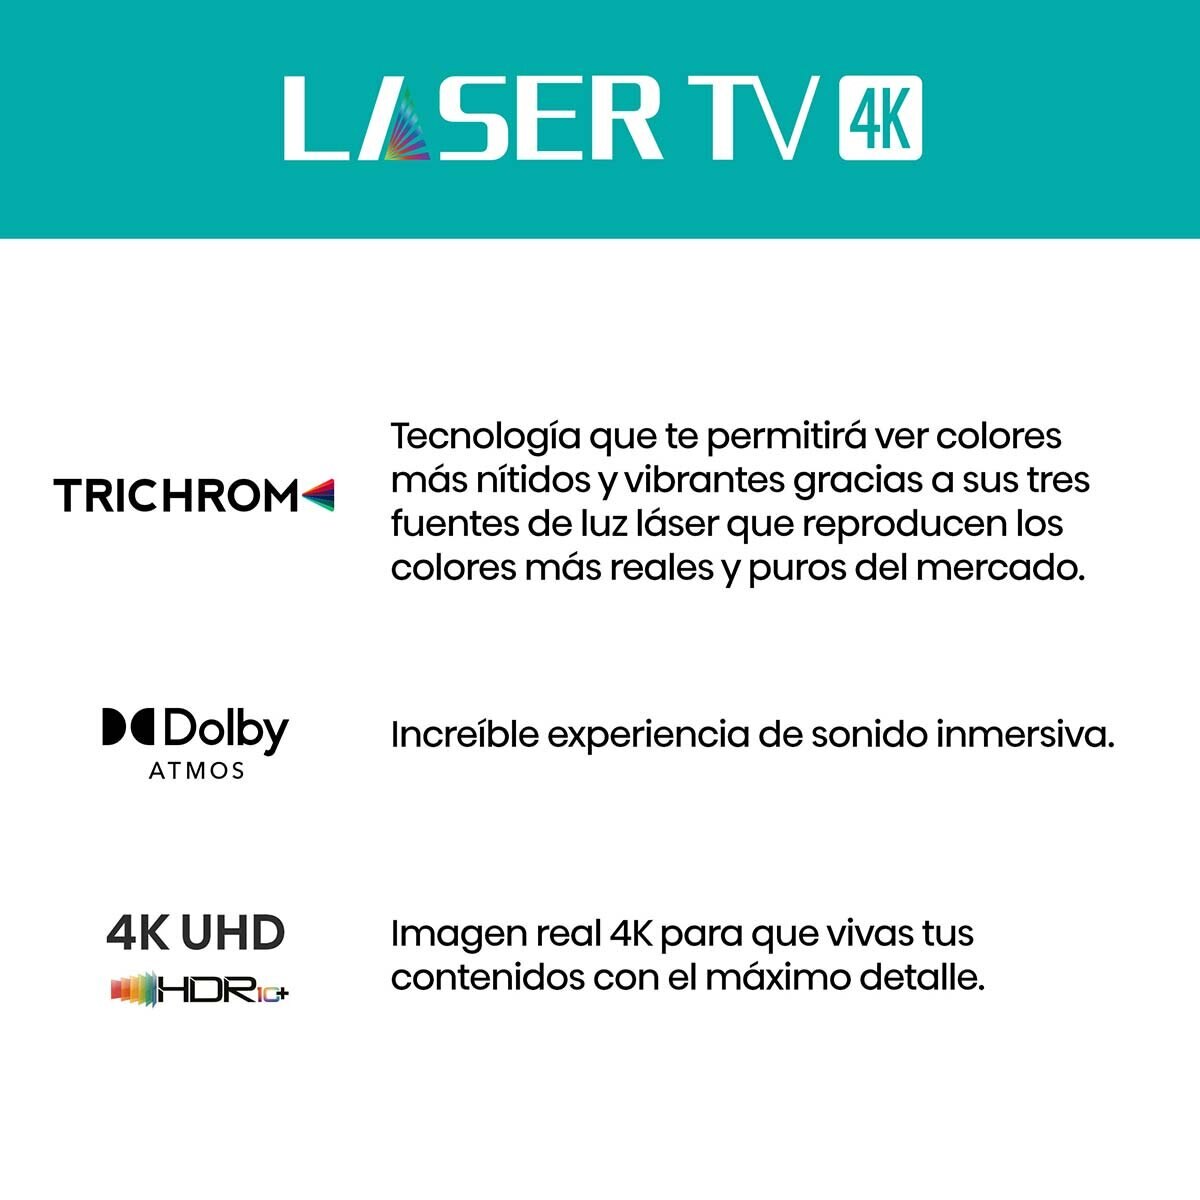 Hisense Laser TV 100" + Barra de Sonido 2.1 Canales